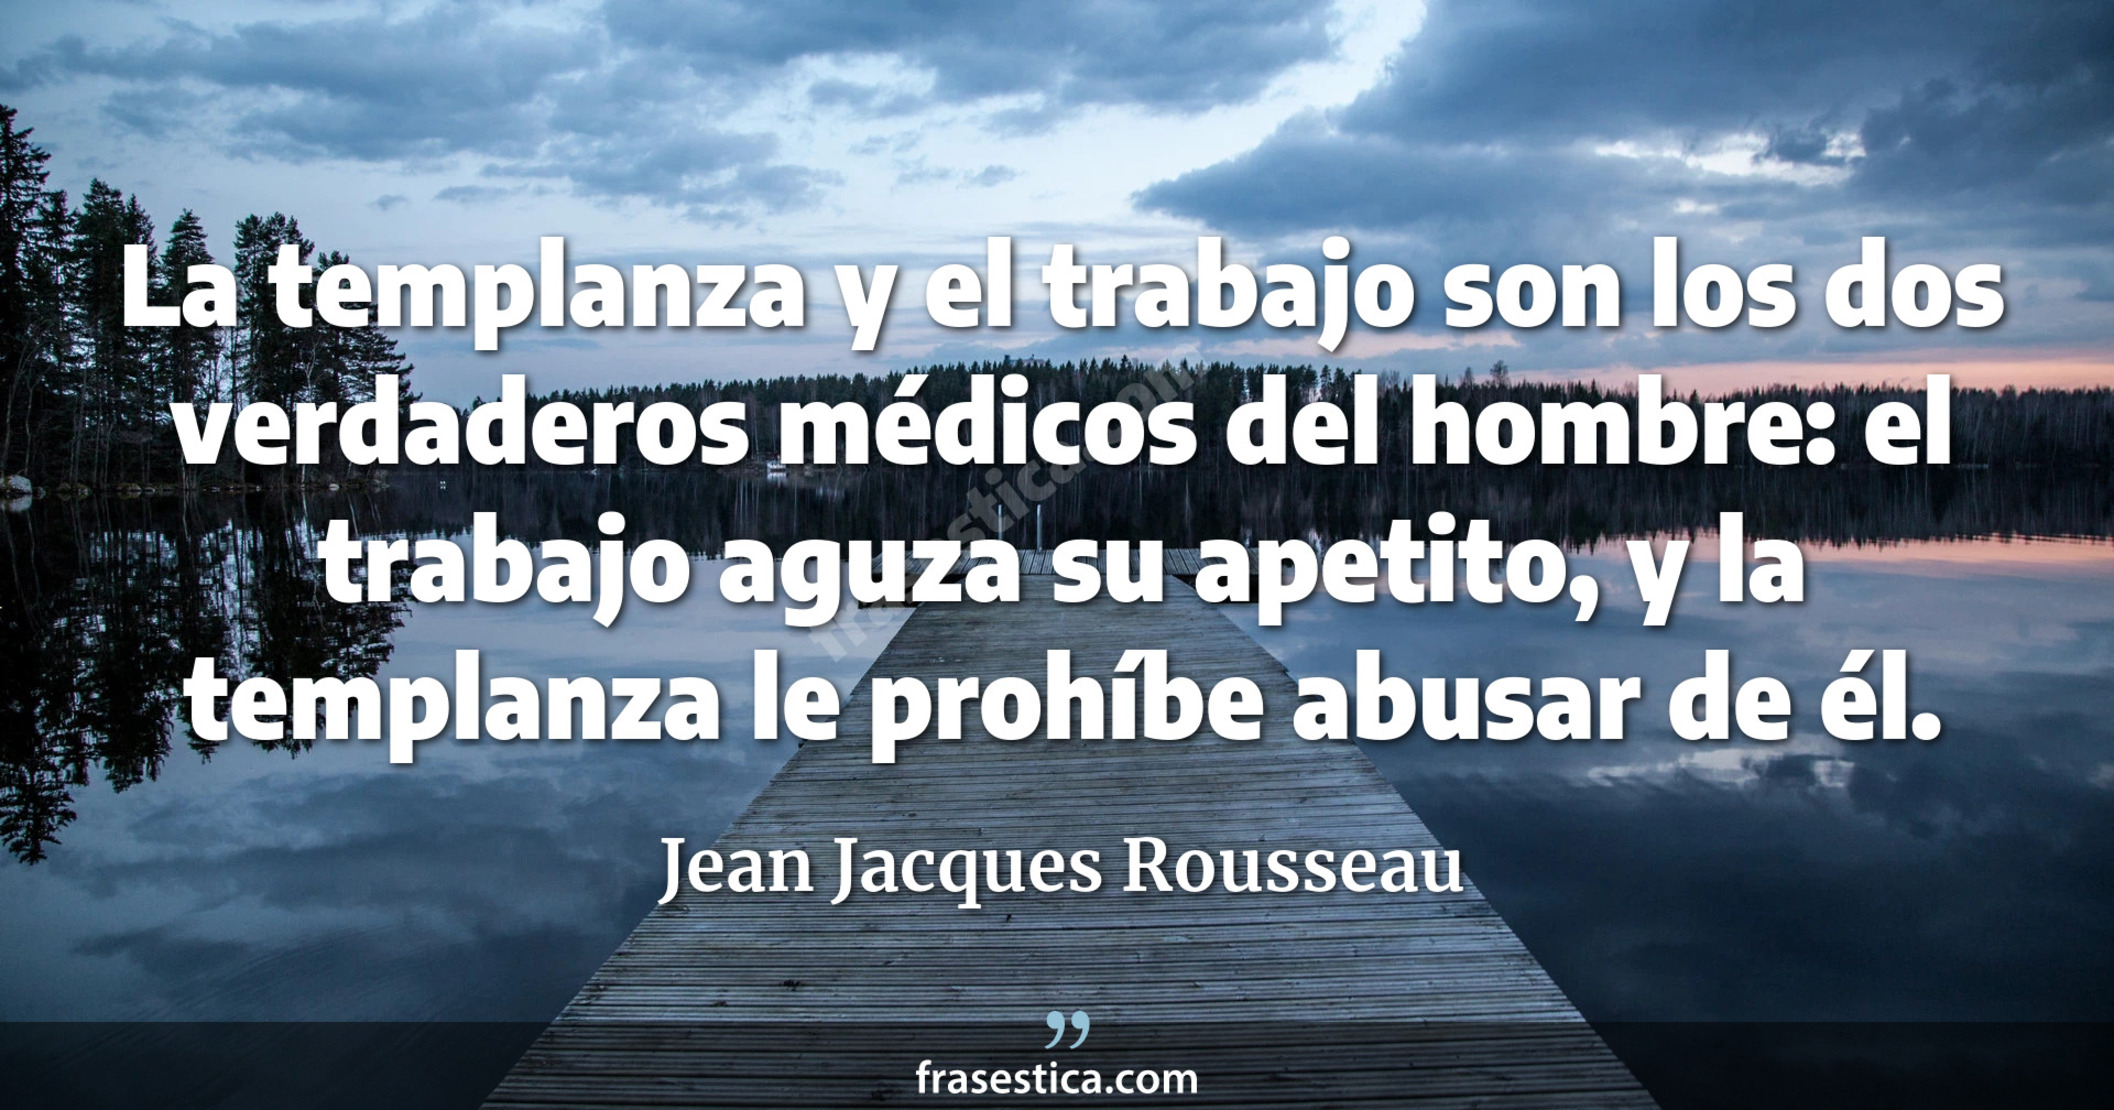 La templanza y el trabajo son los dos verdaderos médicos del hombre: el trabajo aguza su apetito, y la templanza le prohíbe abusar de él. - Jean Jacques Rousseau